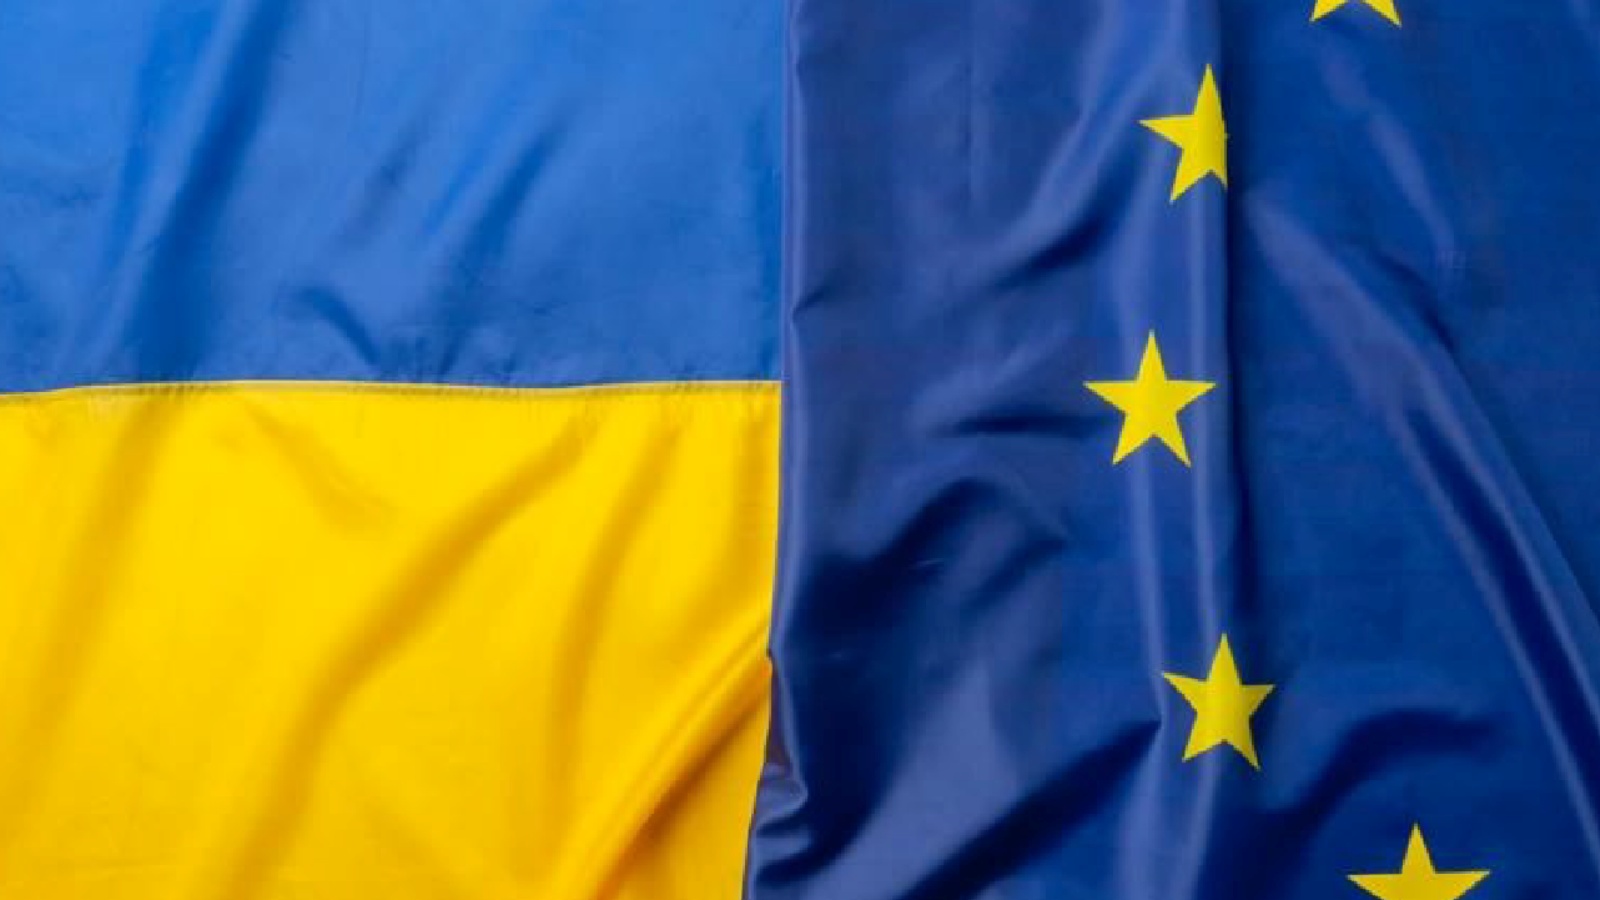 De Europese Unie verleent steun ter waarde van 9 miljard euro aan Oekraïne